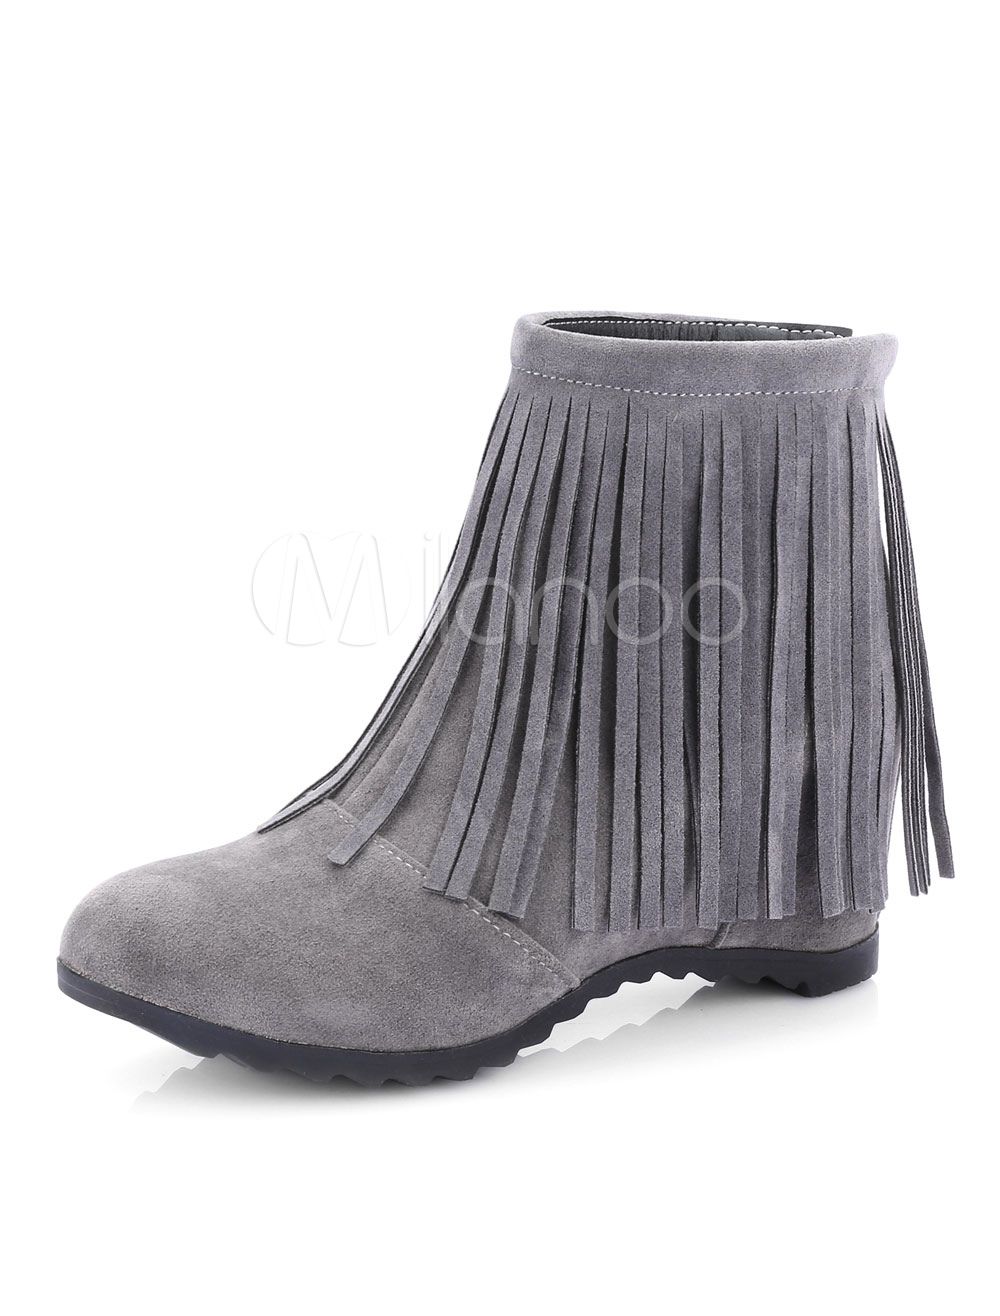 Grey Ankle Boots Suede Hidden Heel Round Toe Zip Up Booties With Fringe | Milanoo